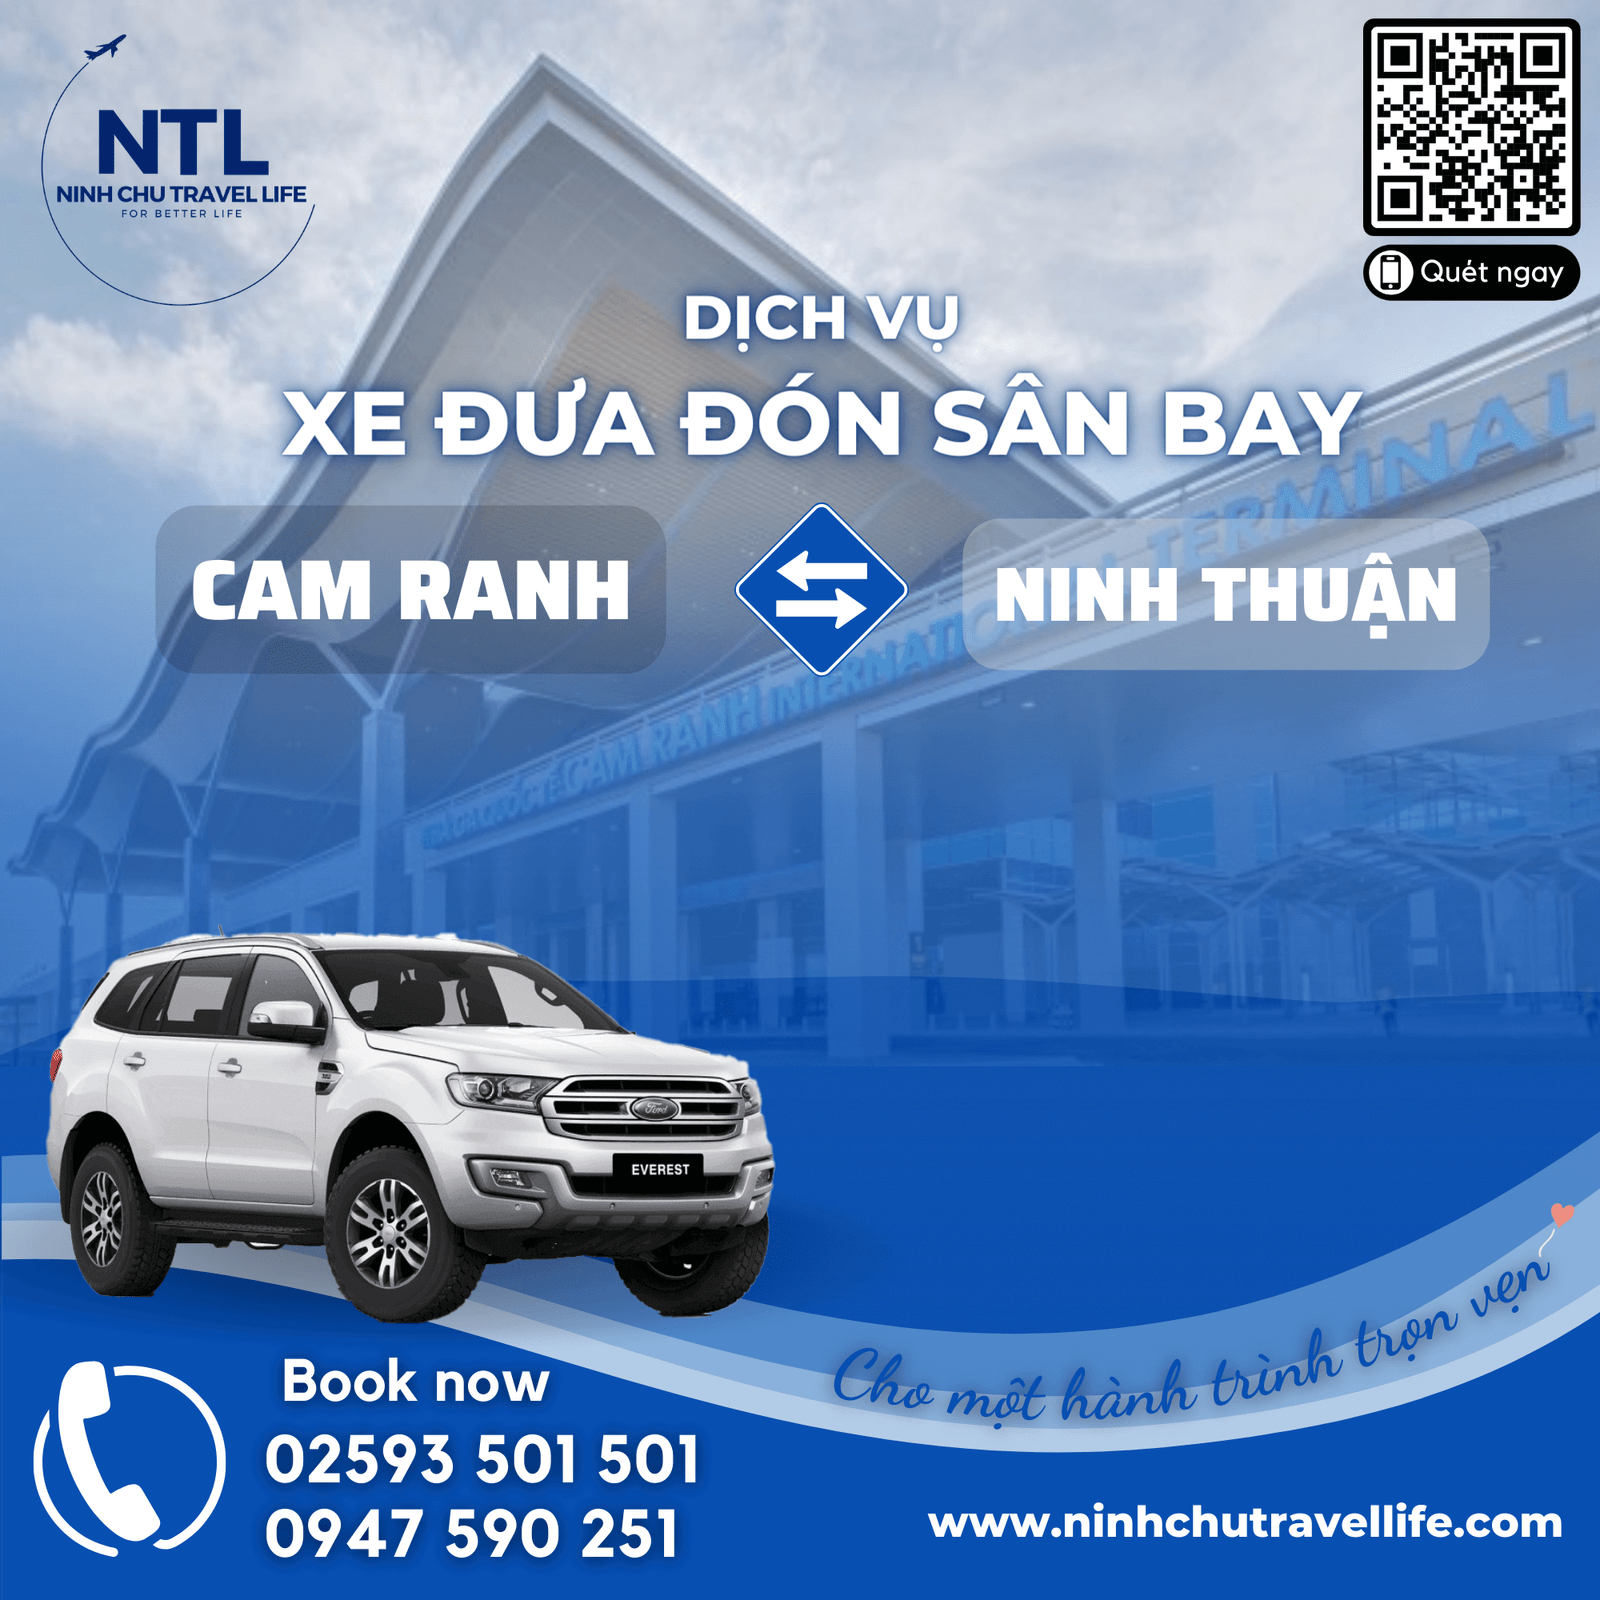 Đặt thuê xe đưa đón sân bay Cam Ranh Ninh Thuận chất lượng giá tốt tại Ninh Chữ Travel Life